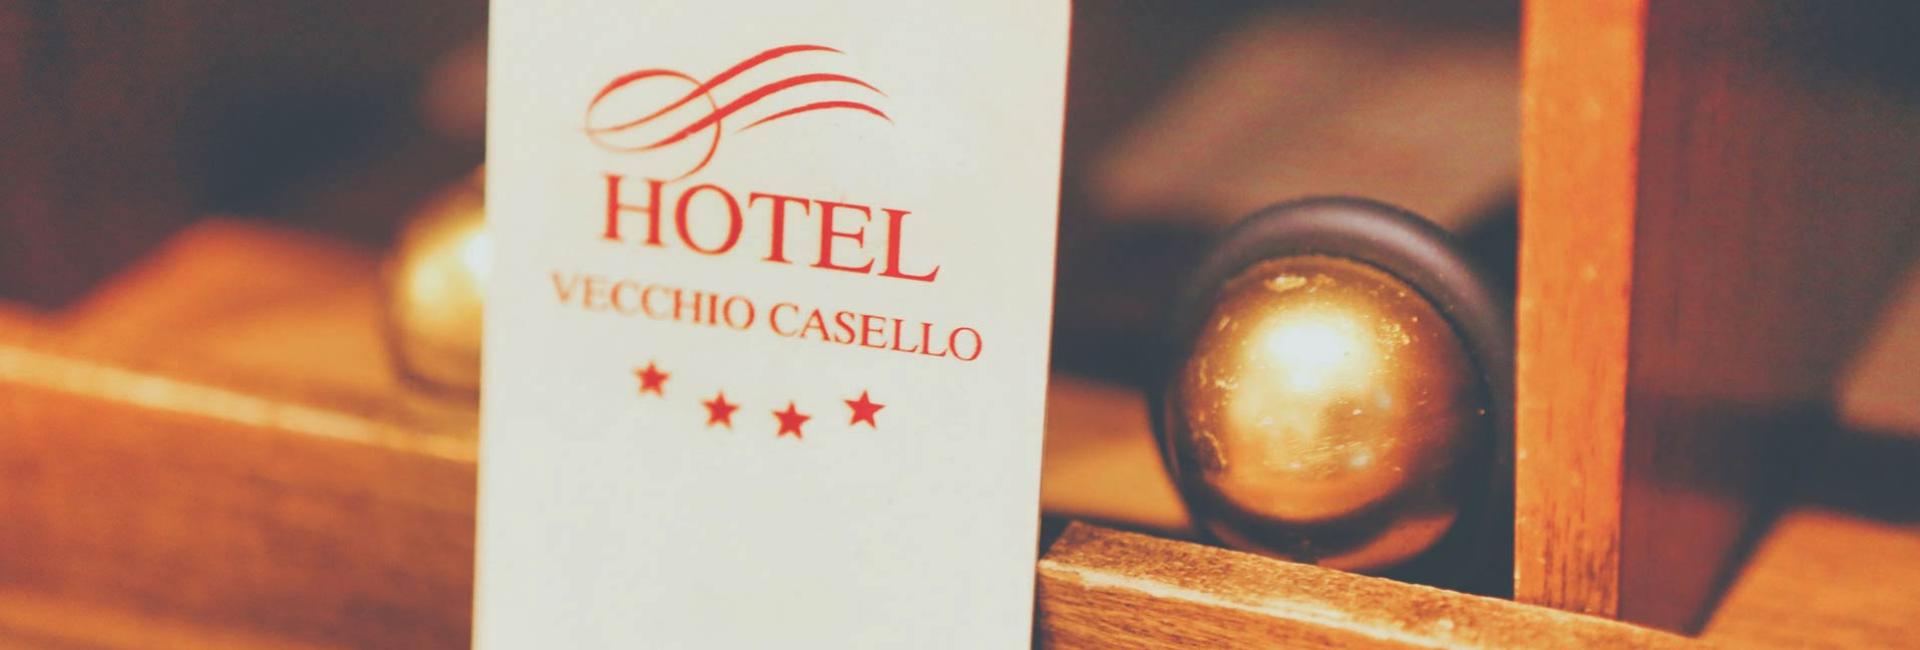 hotelilvecchiocasello it calici-tra-le-mura-a-pizzighettone-promozione-offerta-camere-hotel-il-vecchio-casello-vino-relax-29-30-aprile-e-1-maggio-2023 002